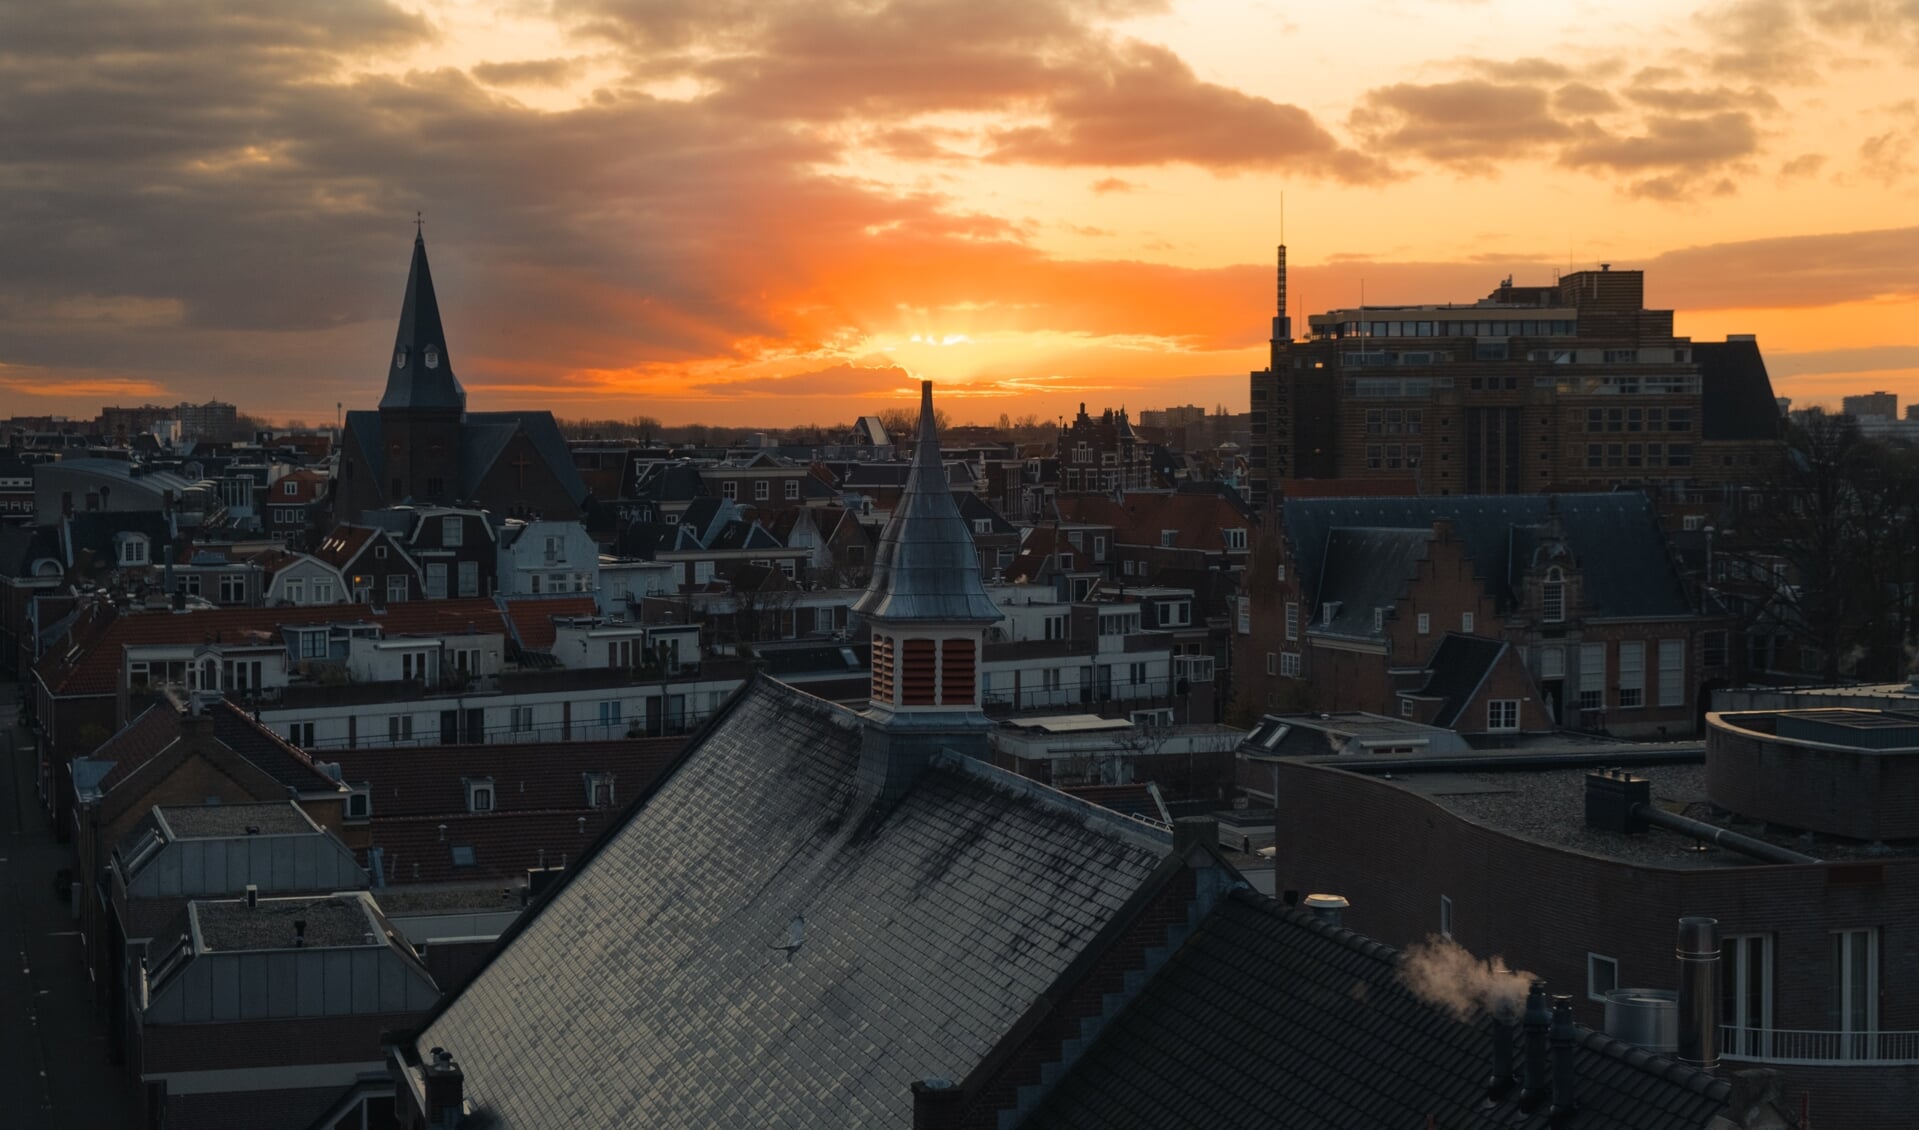 Waarom is Haarlem de hoofdstad van Noord-Holland?